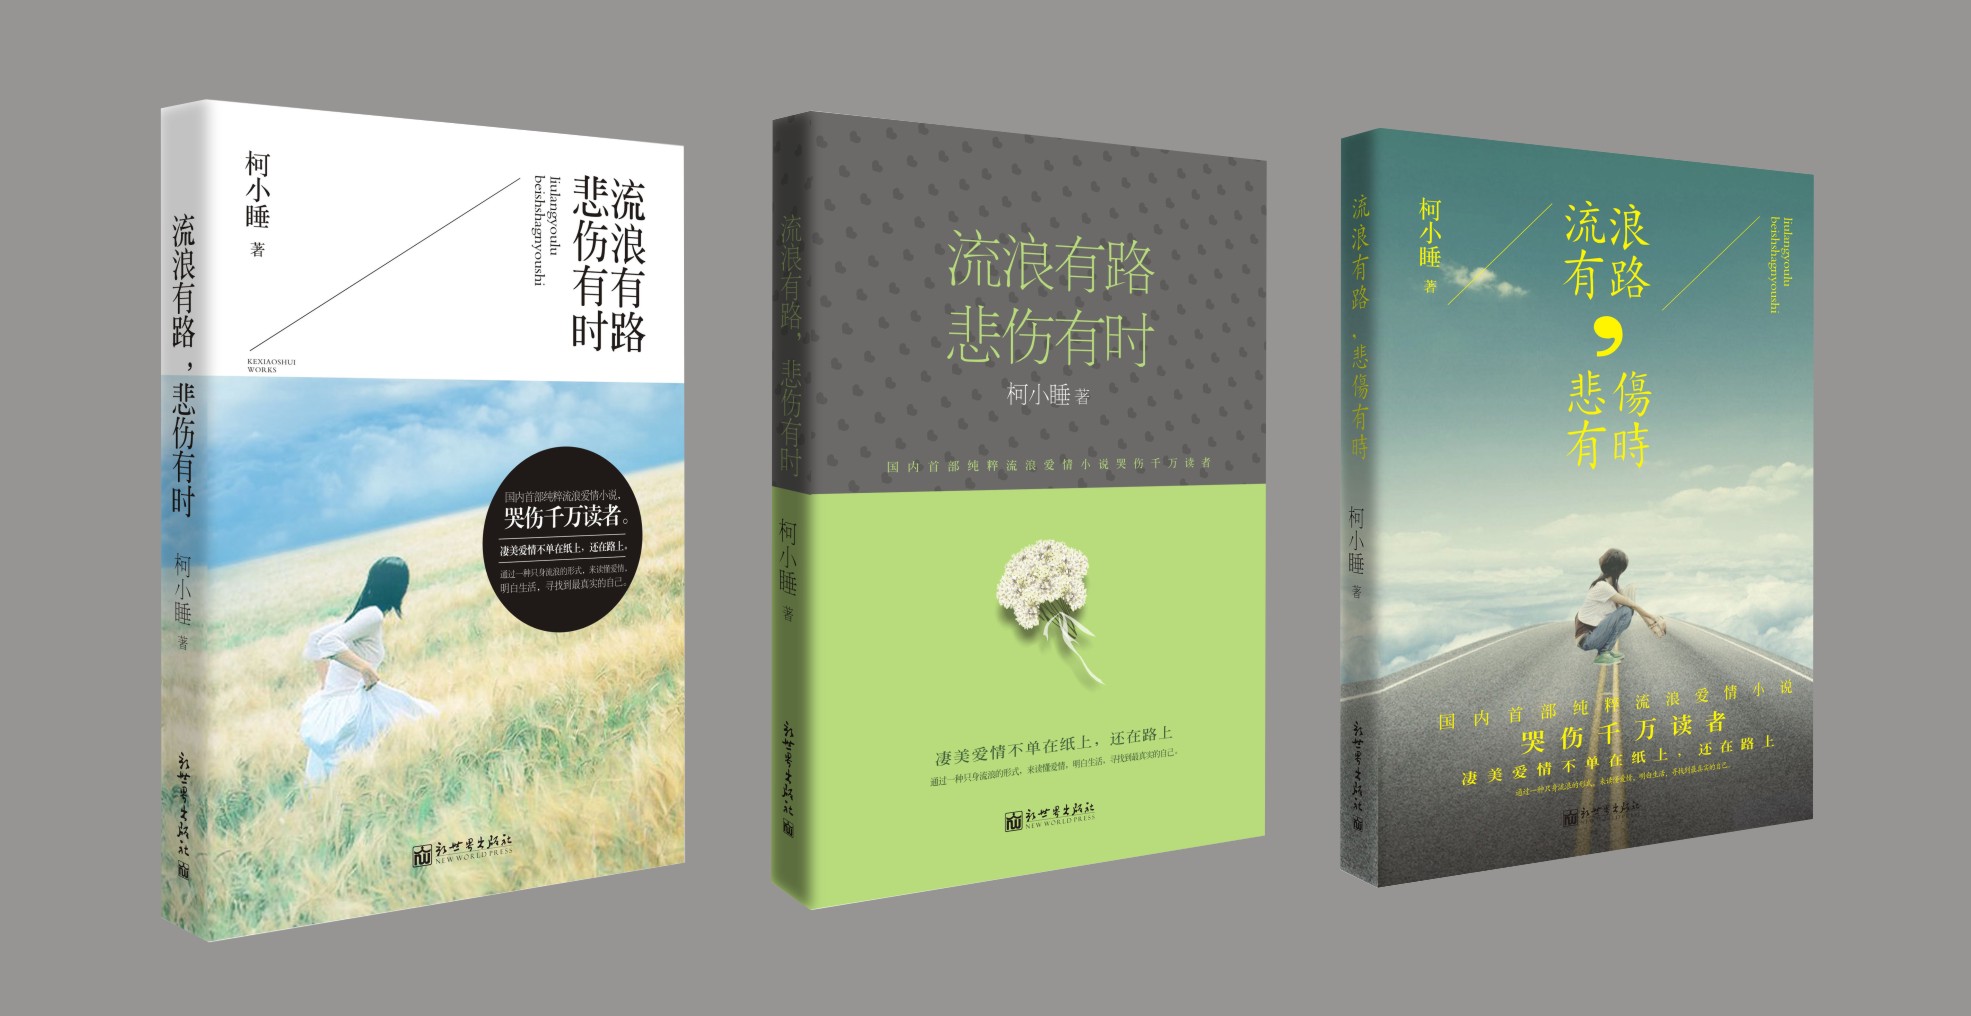 北京画册设计、展览设计、摄影摄像、制作、视频剪辑